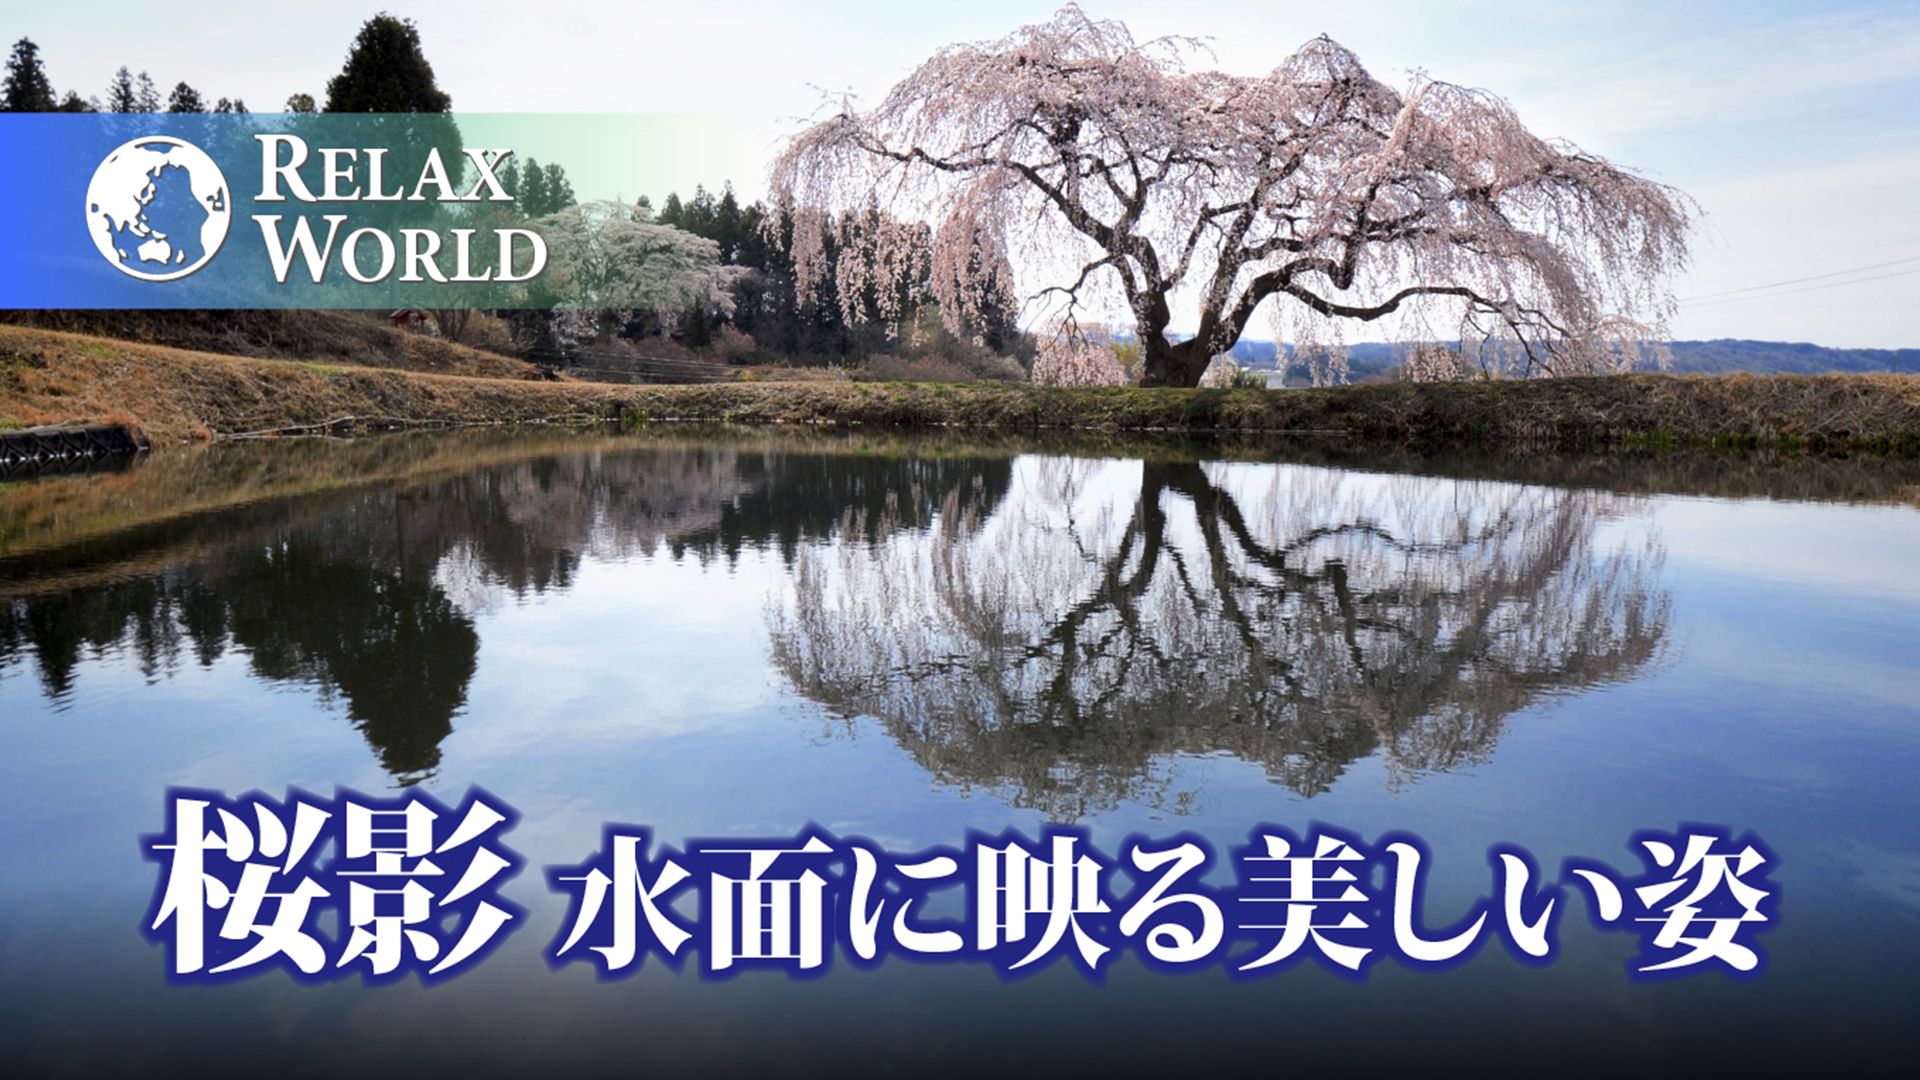 桜影・水面に映る美しい姿【RELAX WORLD】